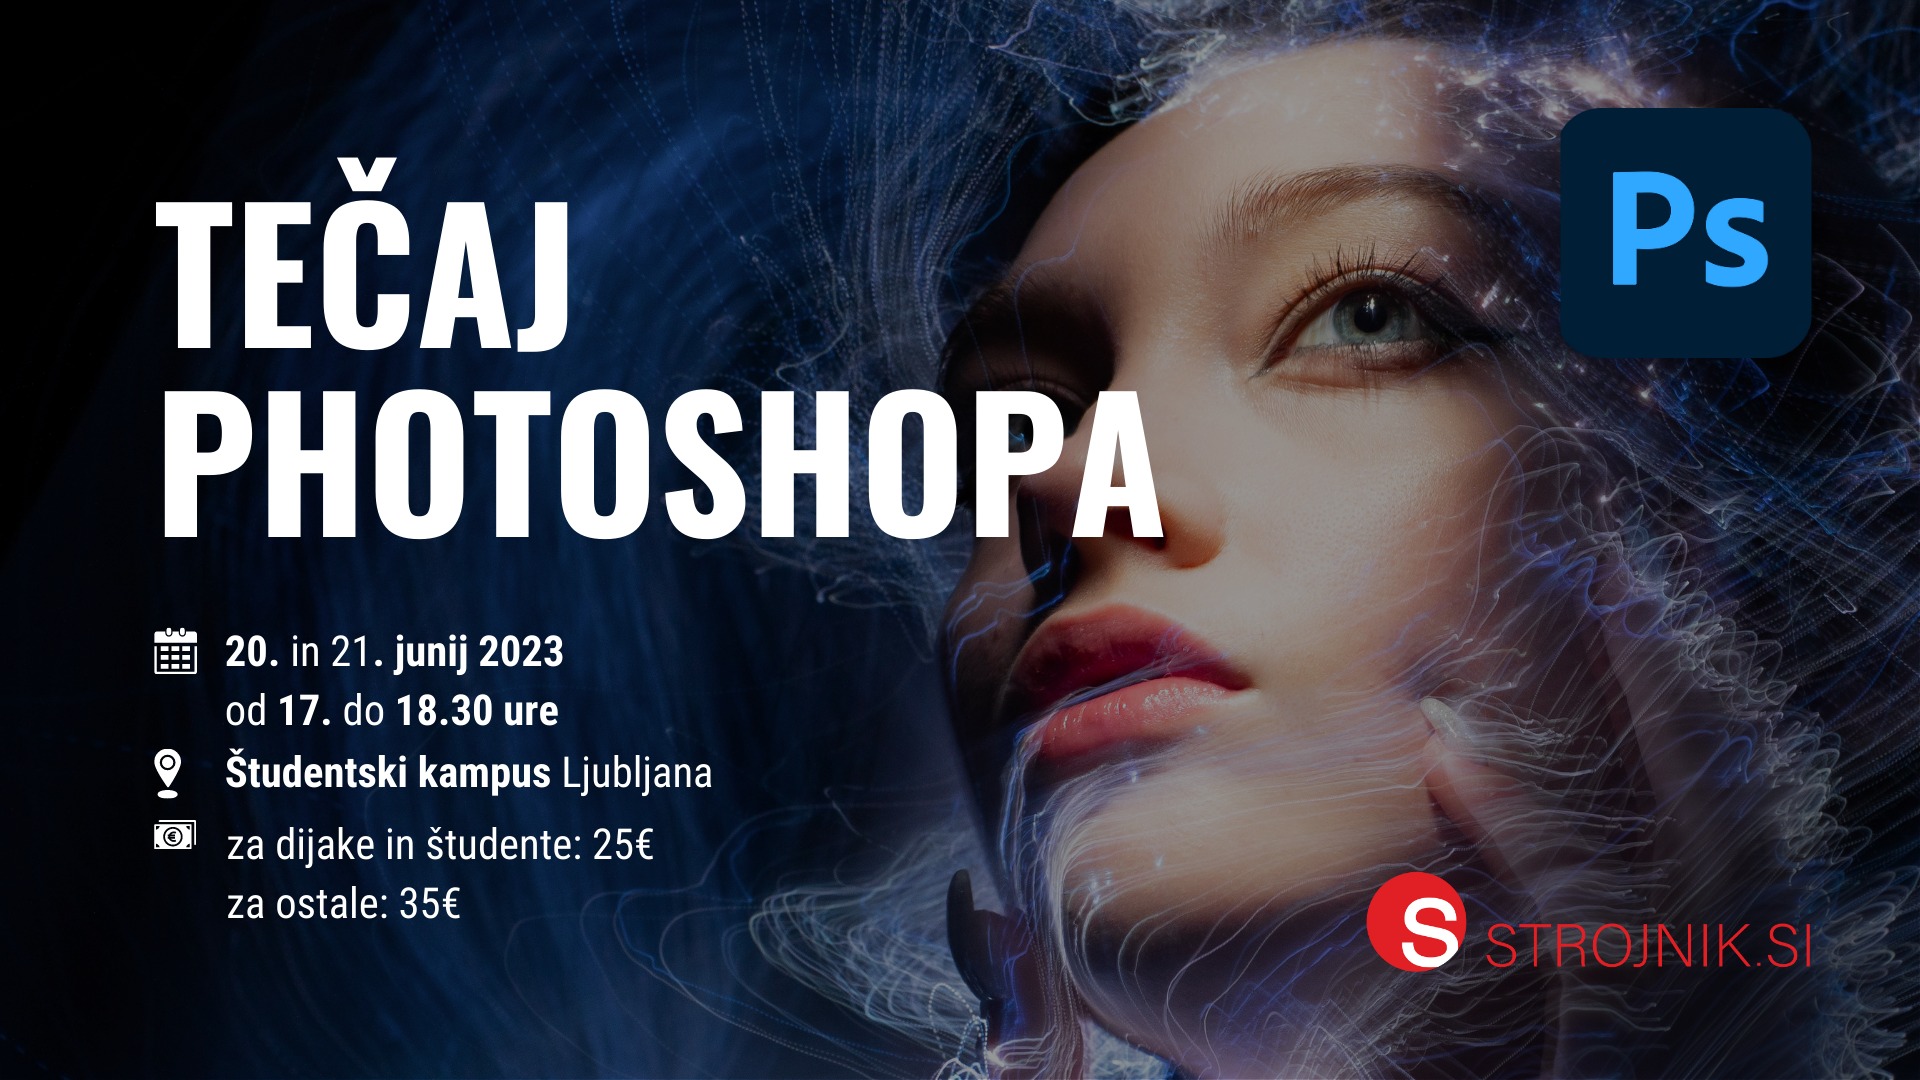 Tečaj Photoshopa | 20. in 21. junij | Študentski kampus